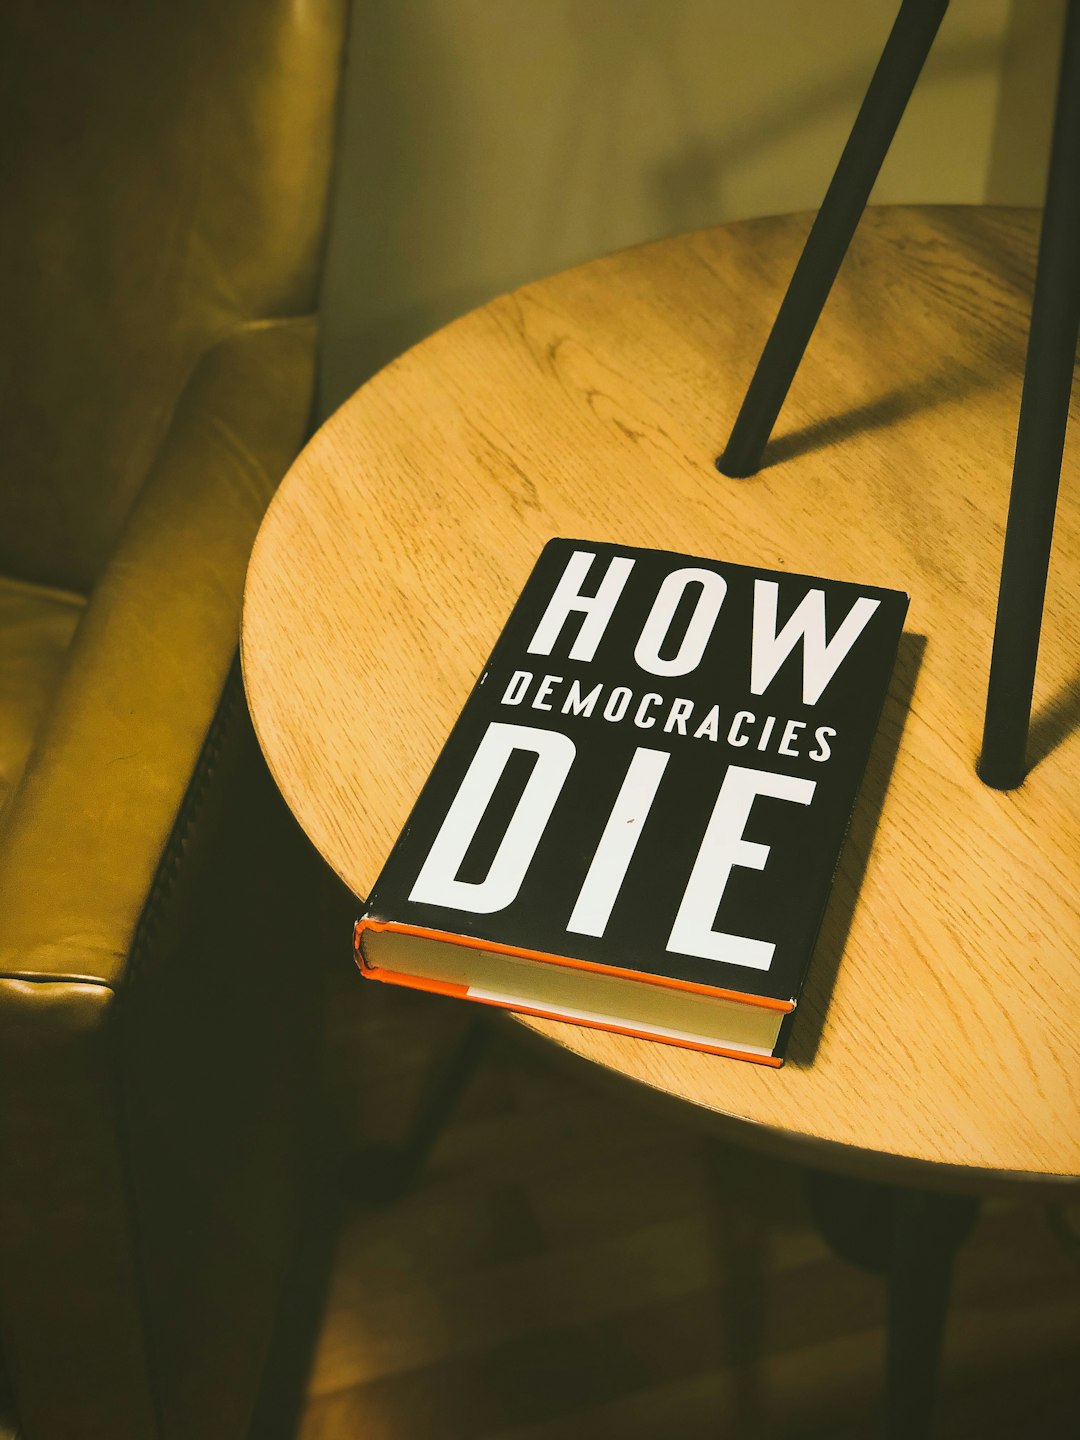 How Democracies Die book on brown wooden side table